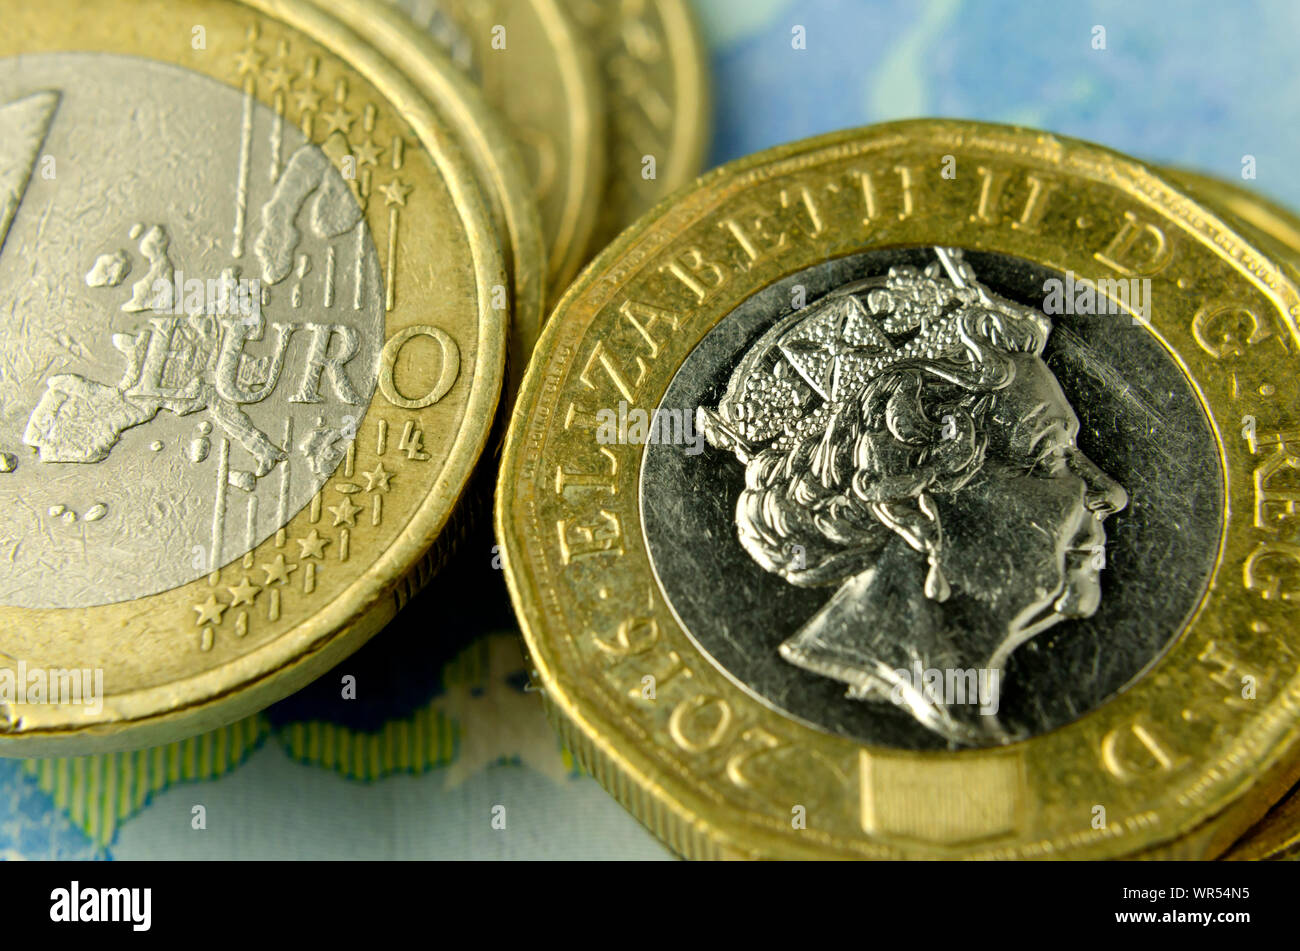 Pila di British pound monete accanto a una delle monete in euro nel caso in cui sia visibile solo la mappa dell'UE. Illustra il fatto che il Regno Unito a lasciare l'UE. Foto Stock